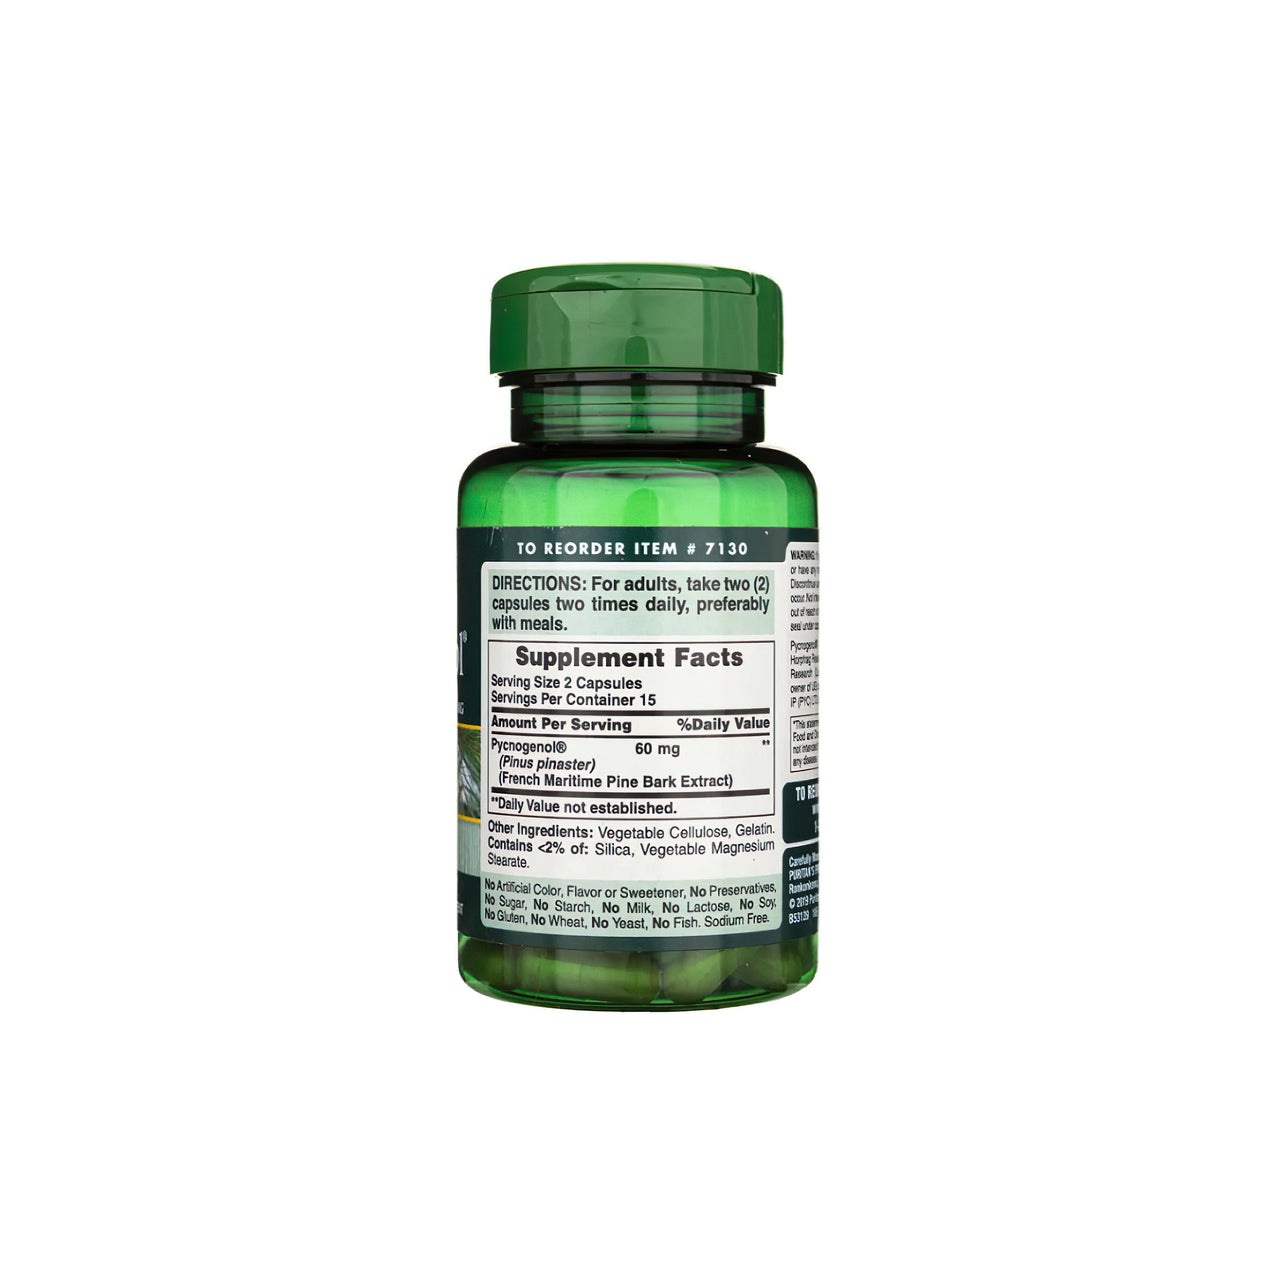 Um frasco de Pycnogenol 30 mg 30 Rapid Release Capsules da Puritan's Pride com proantocianetos de flavonóides.